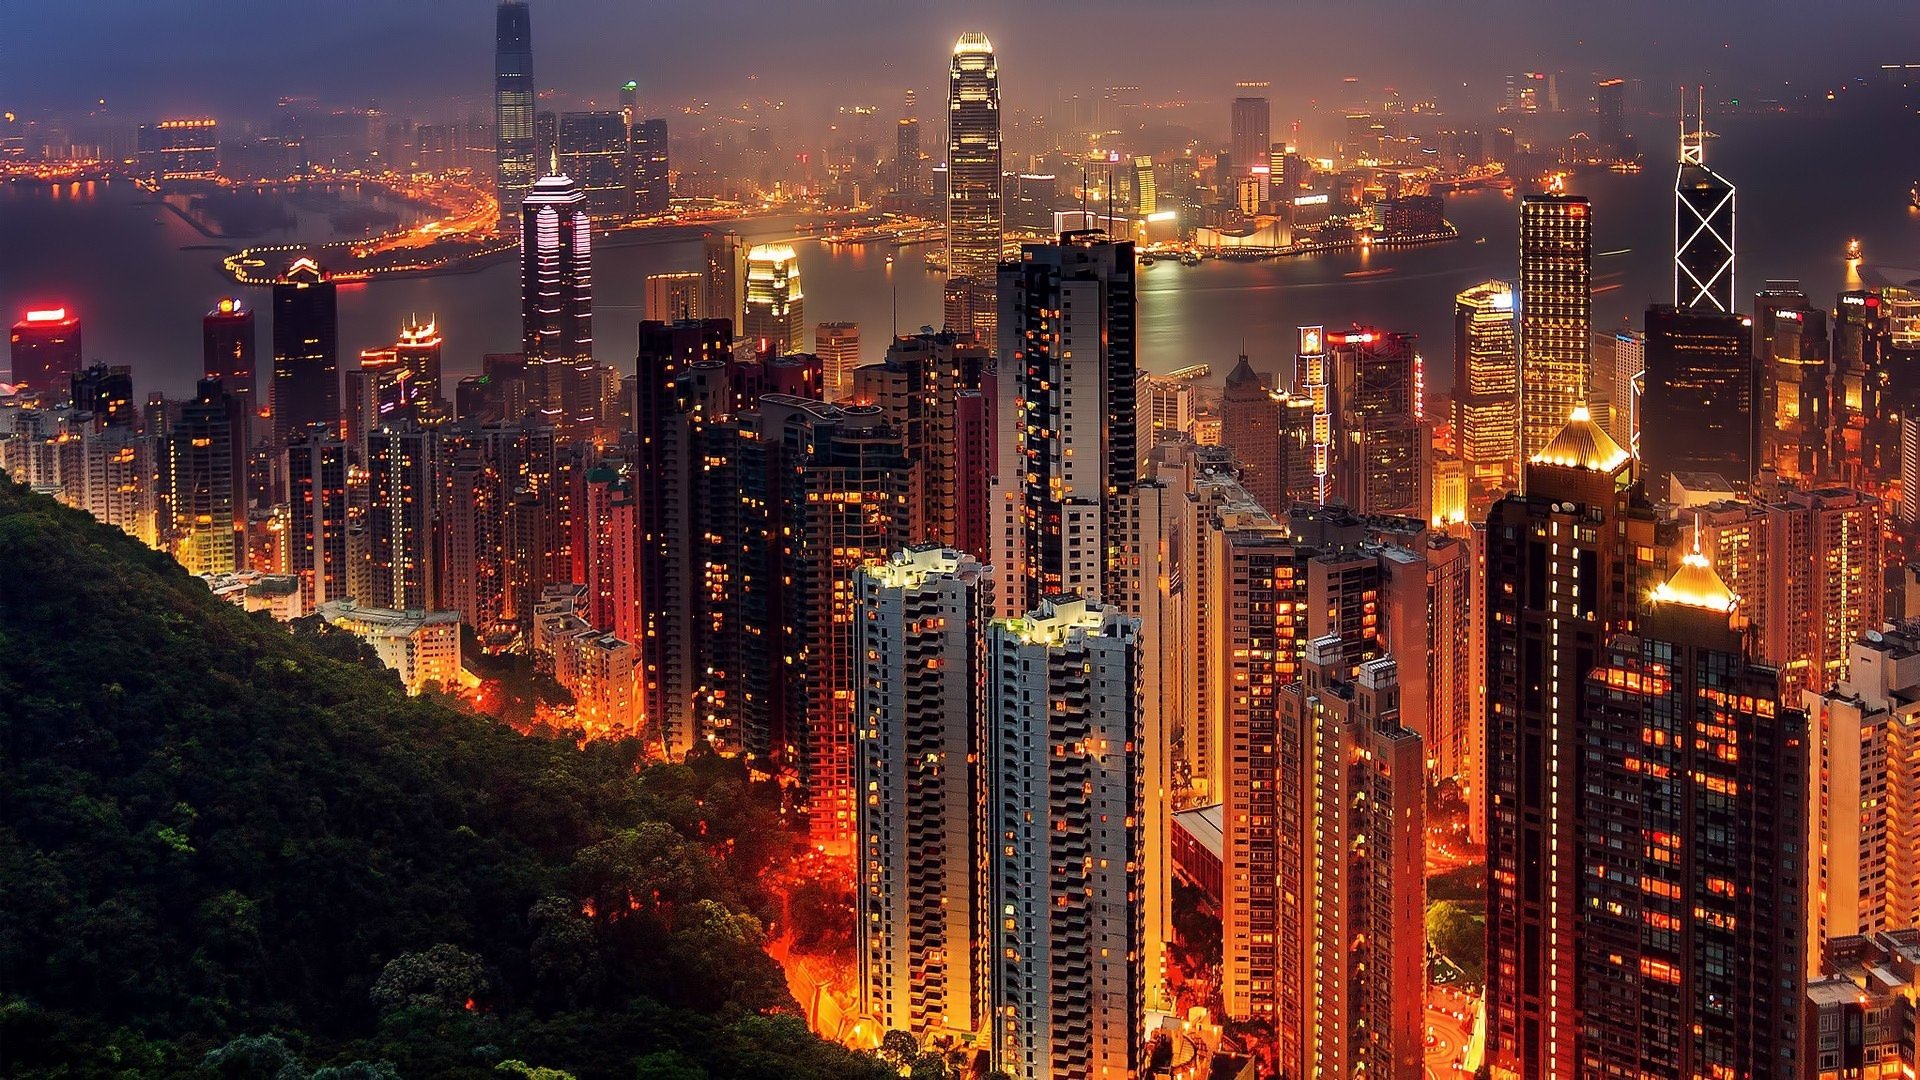 Hong Kong China Night Wallpaper Hd City 4k Wallpapers Images | Images ...